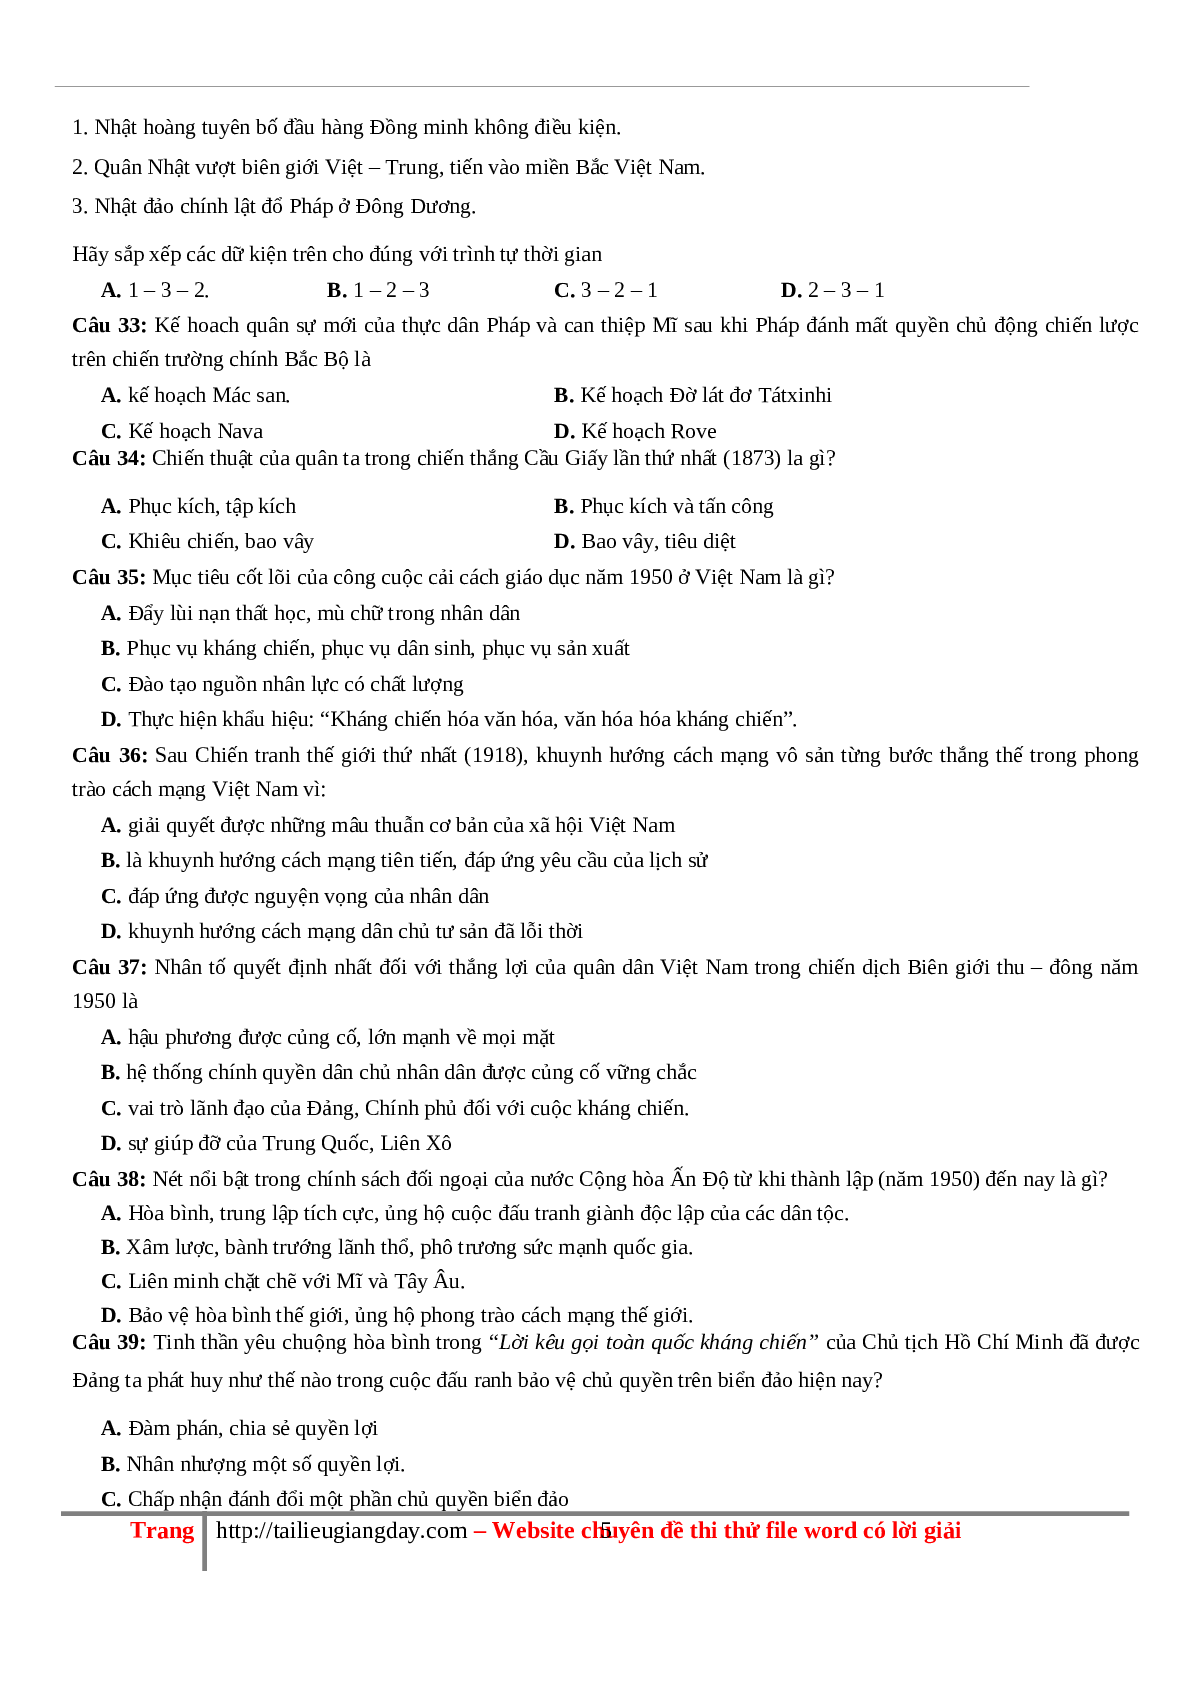 70 câu hỏi ôn tập hay - Lịch Sử 12 (trang 5)